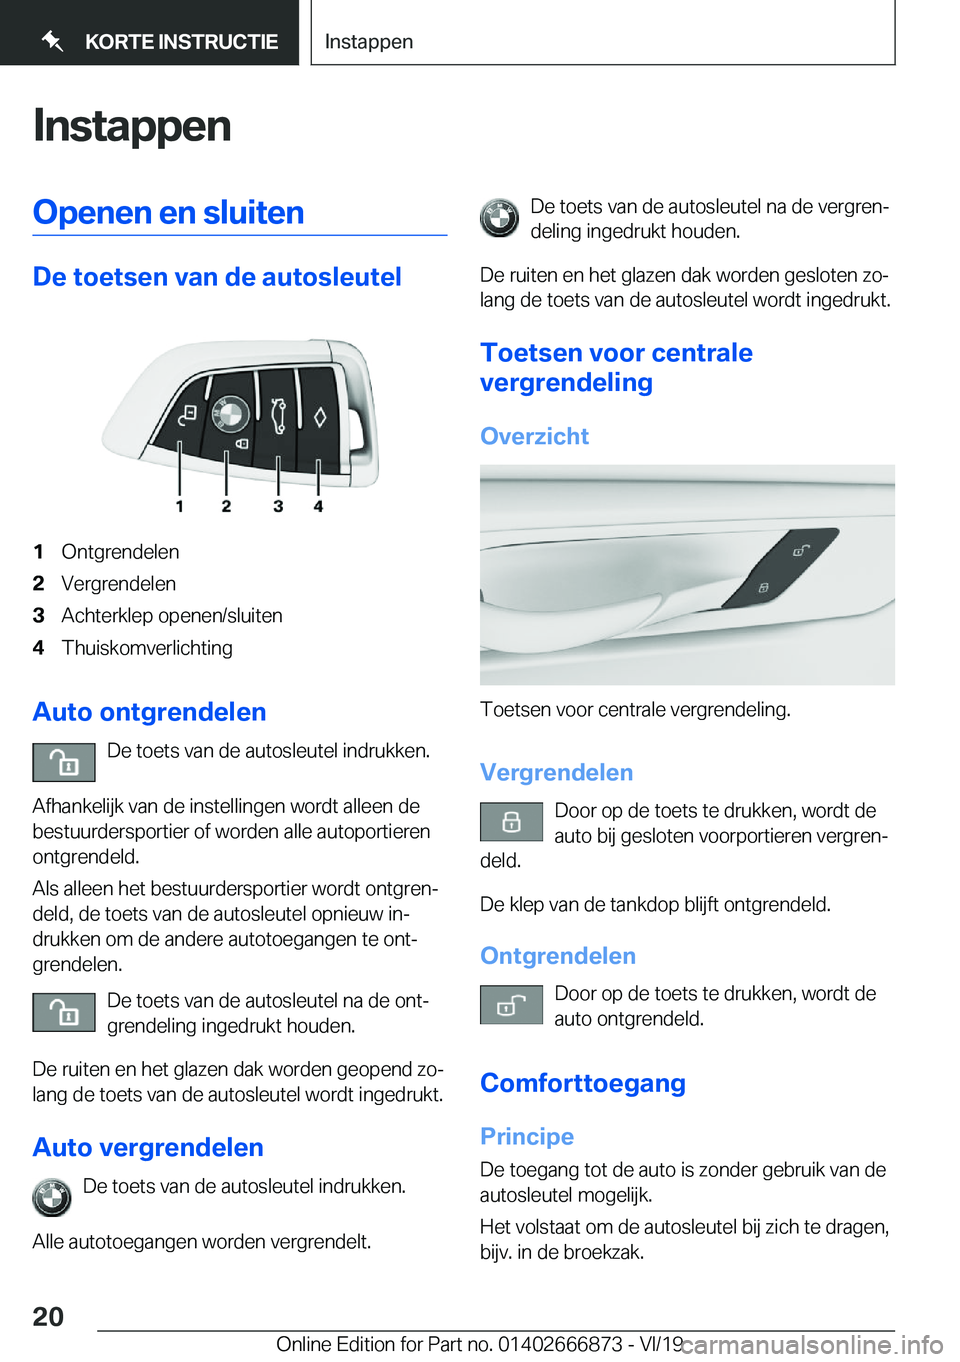 BMW X4 M 2020  Instructieboekjes (in Dutch) �I�n�s�t�a�p�p�e�n�O�p�e�n�e�n��e�n��s�l�u�i�t�e�n
�D�e��t�o�e�t�s�e�n��v�a�n��d�e��a�u�t�o�s�l�e�u�t�e�l
�1�O�n�t�g�r�e�n�d�e�l�e�n�2�V�e�r�g�r�e�n�d�e�l�e�n�3�A�c�h�t�e�r�k�l�e�p��o�p�e�n�e�n